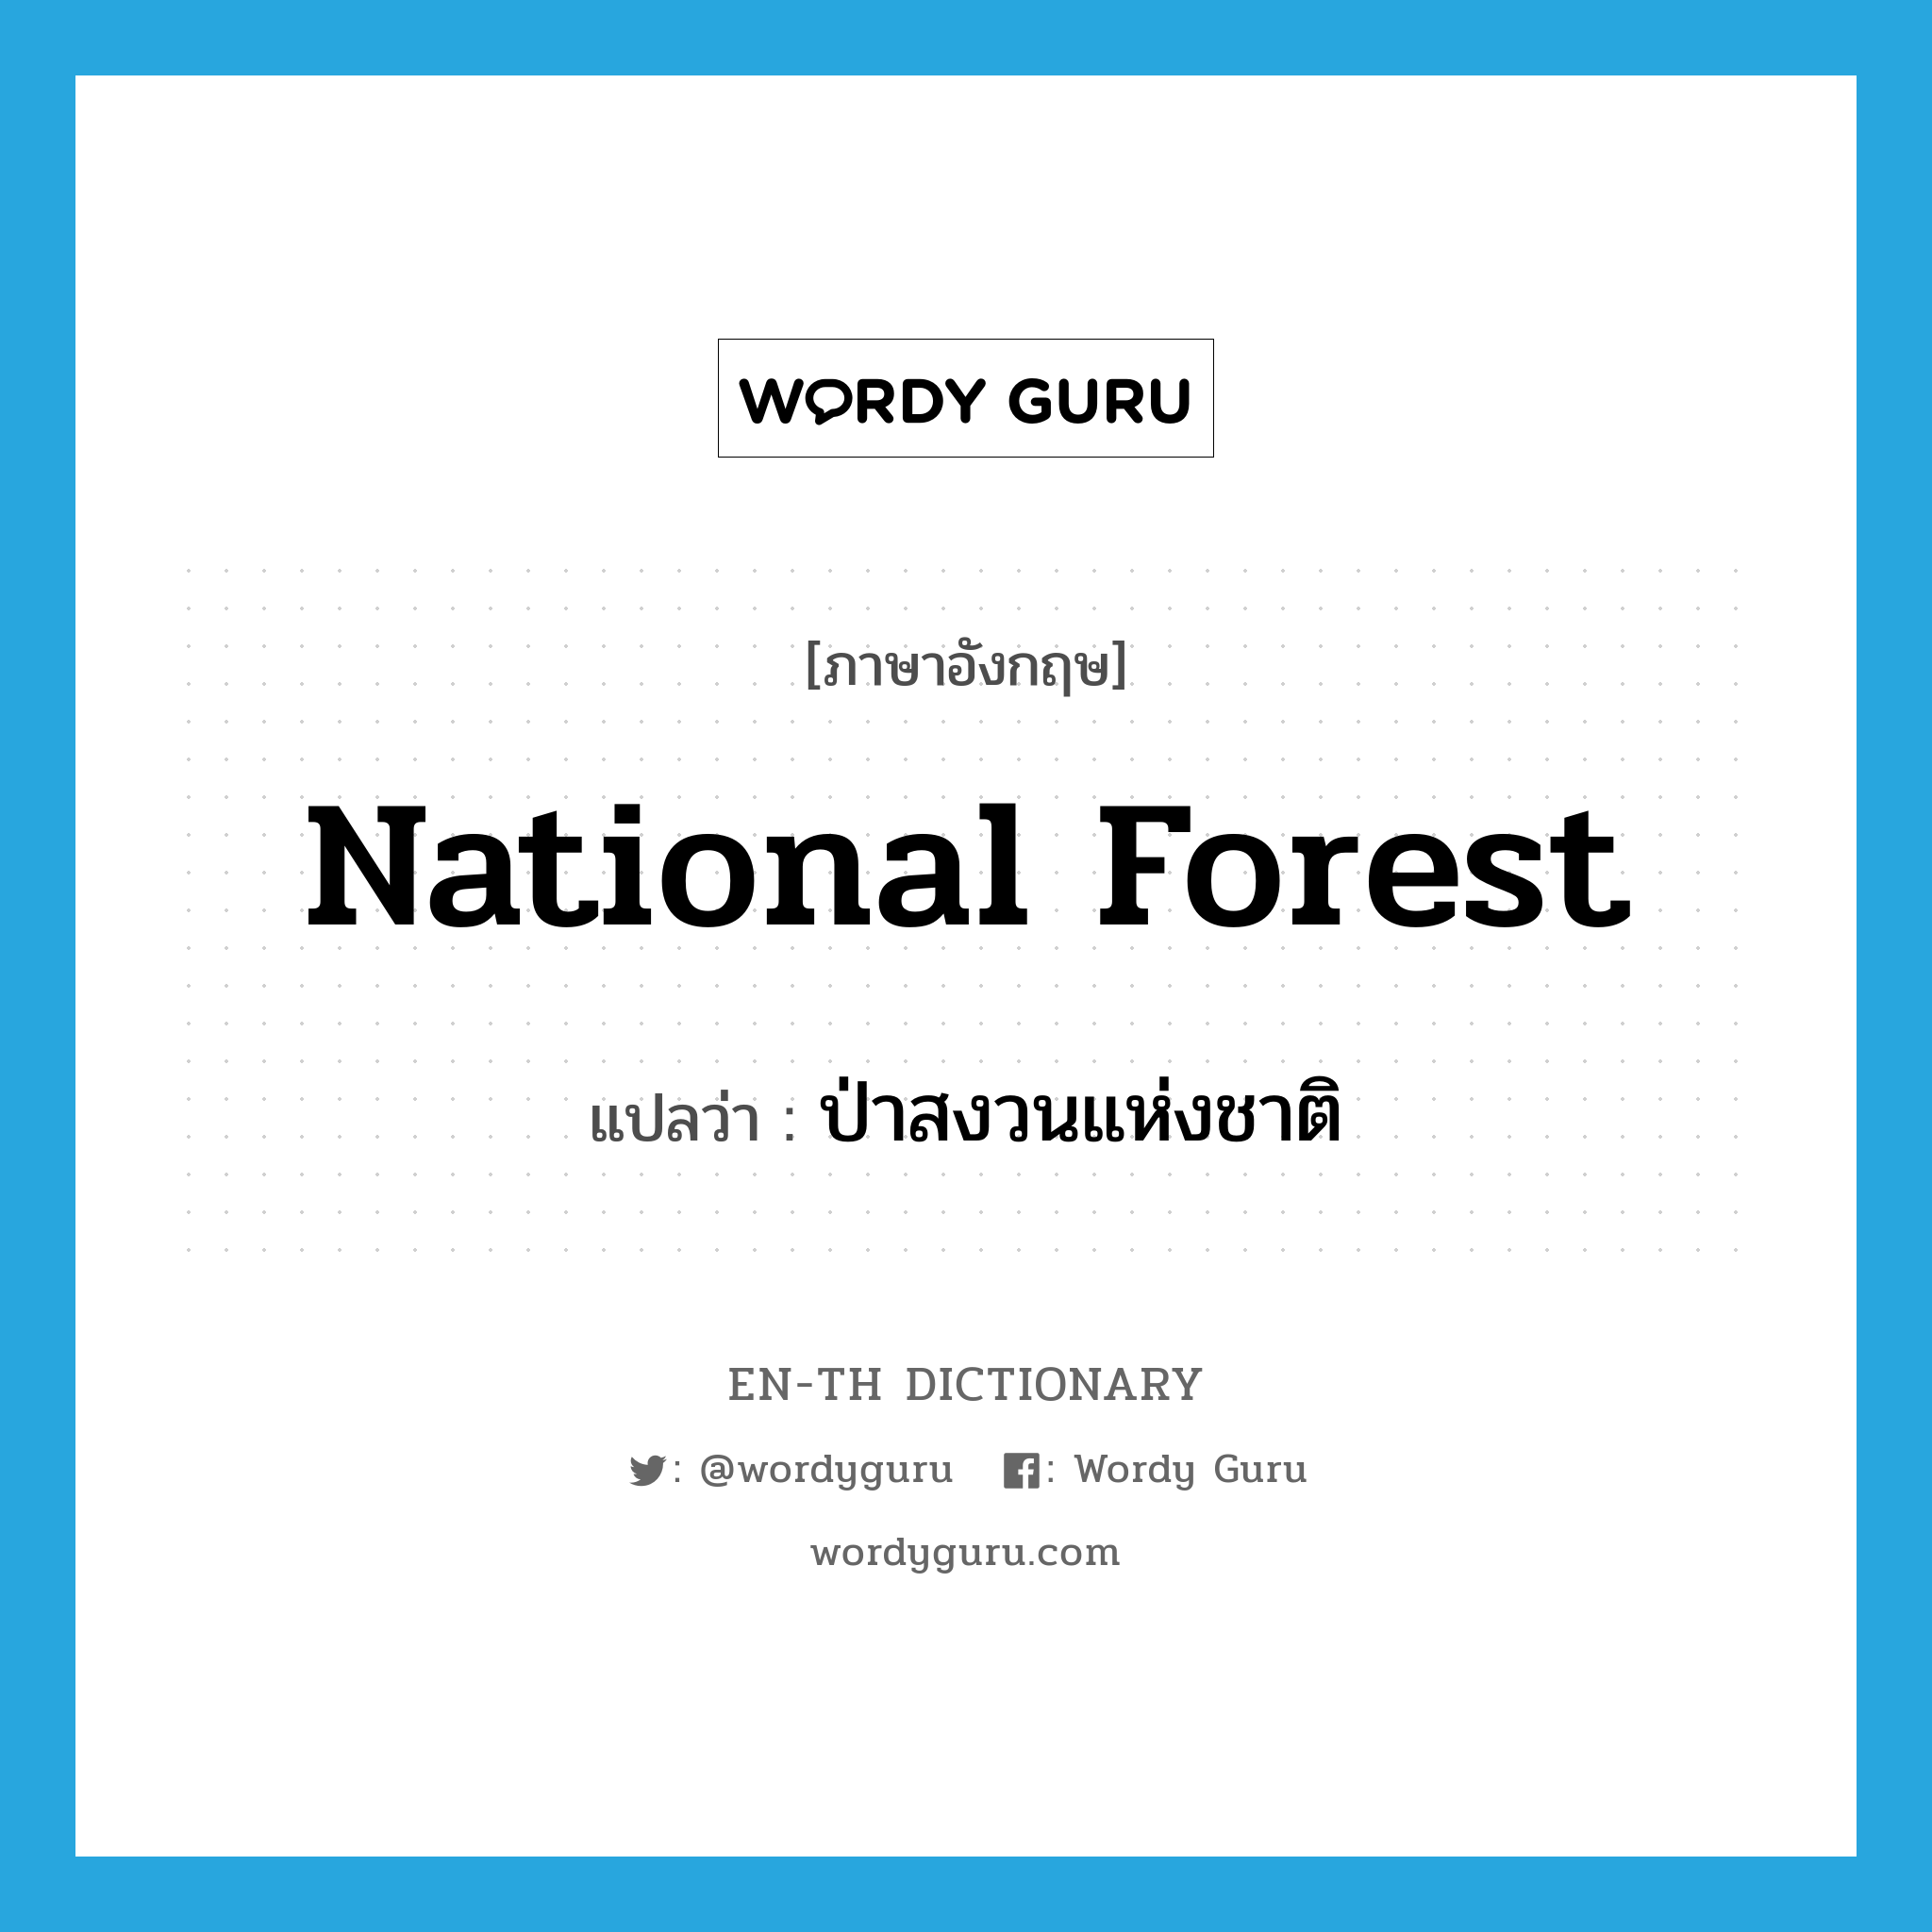 national forest แปลว่า?, คำศัพท์ภาษาอังกฤษ national forest แปลว่า ป่าสงวนแห่งชาติ ประเภท N หมวด N